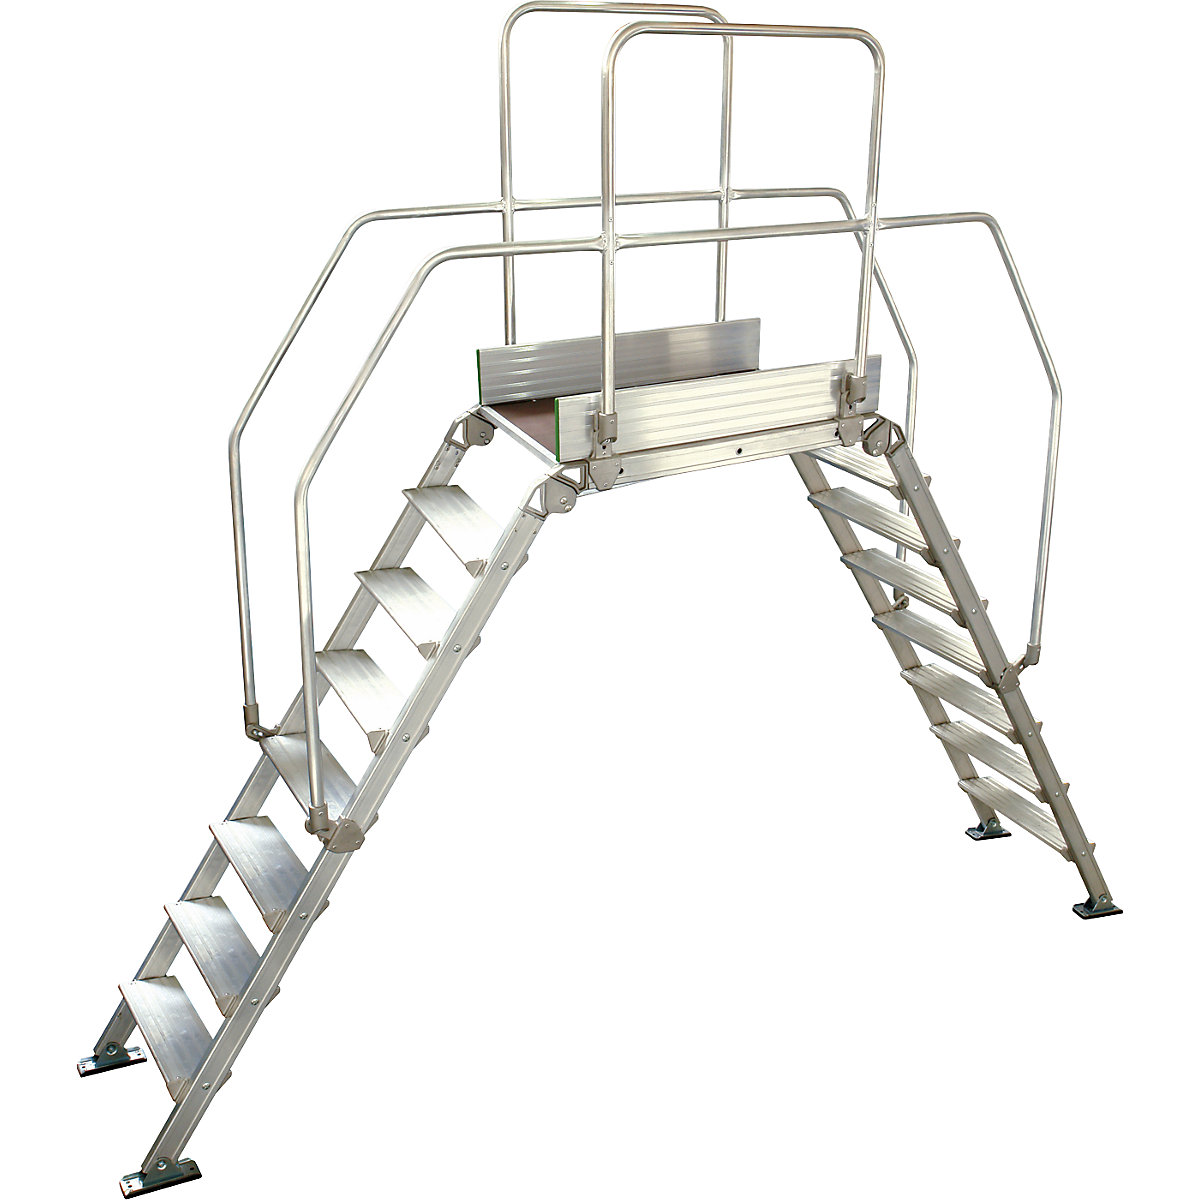 Aluminijasta premostitvena lestev, skupna obremenitev 200 kg, 8 stopnic, podest 900 x 530 mm